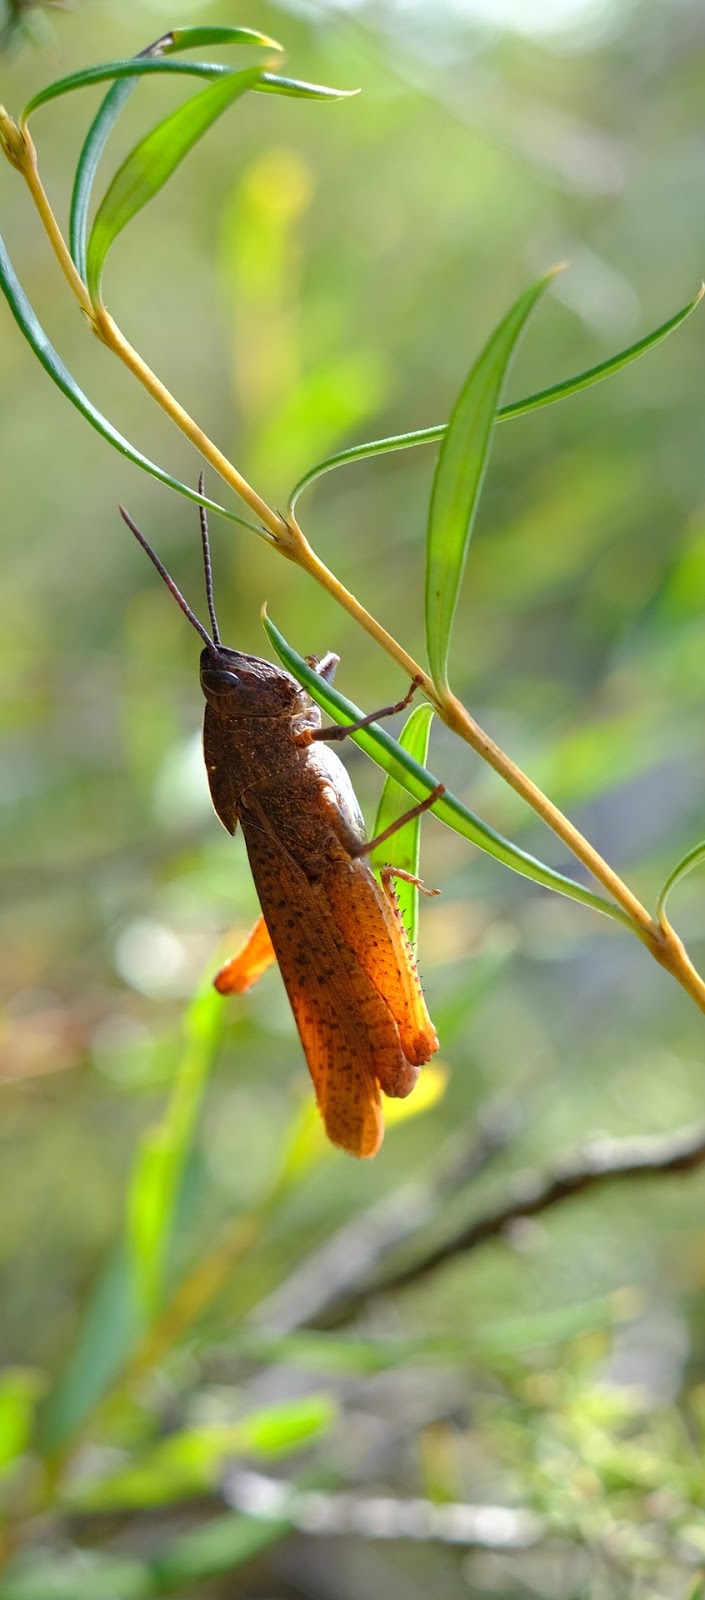 A grasshopper on a gum leaf.